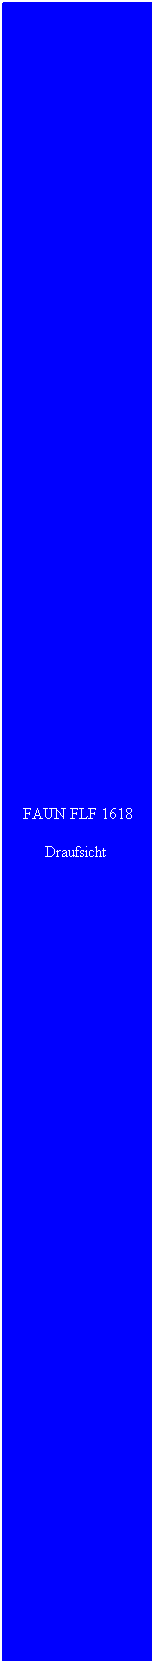 Textfeld: FAUN FLF 1618
Draufsicht 
